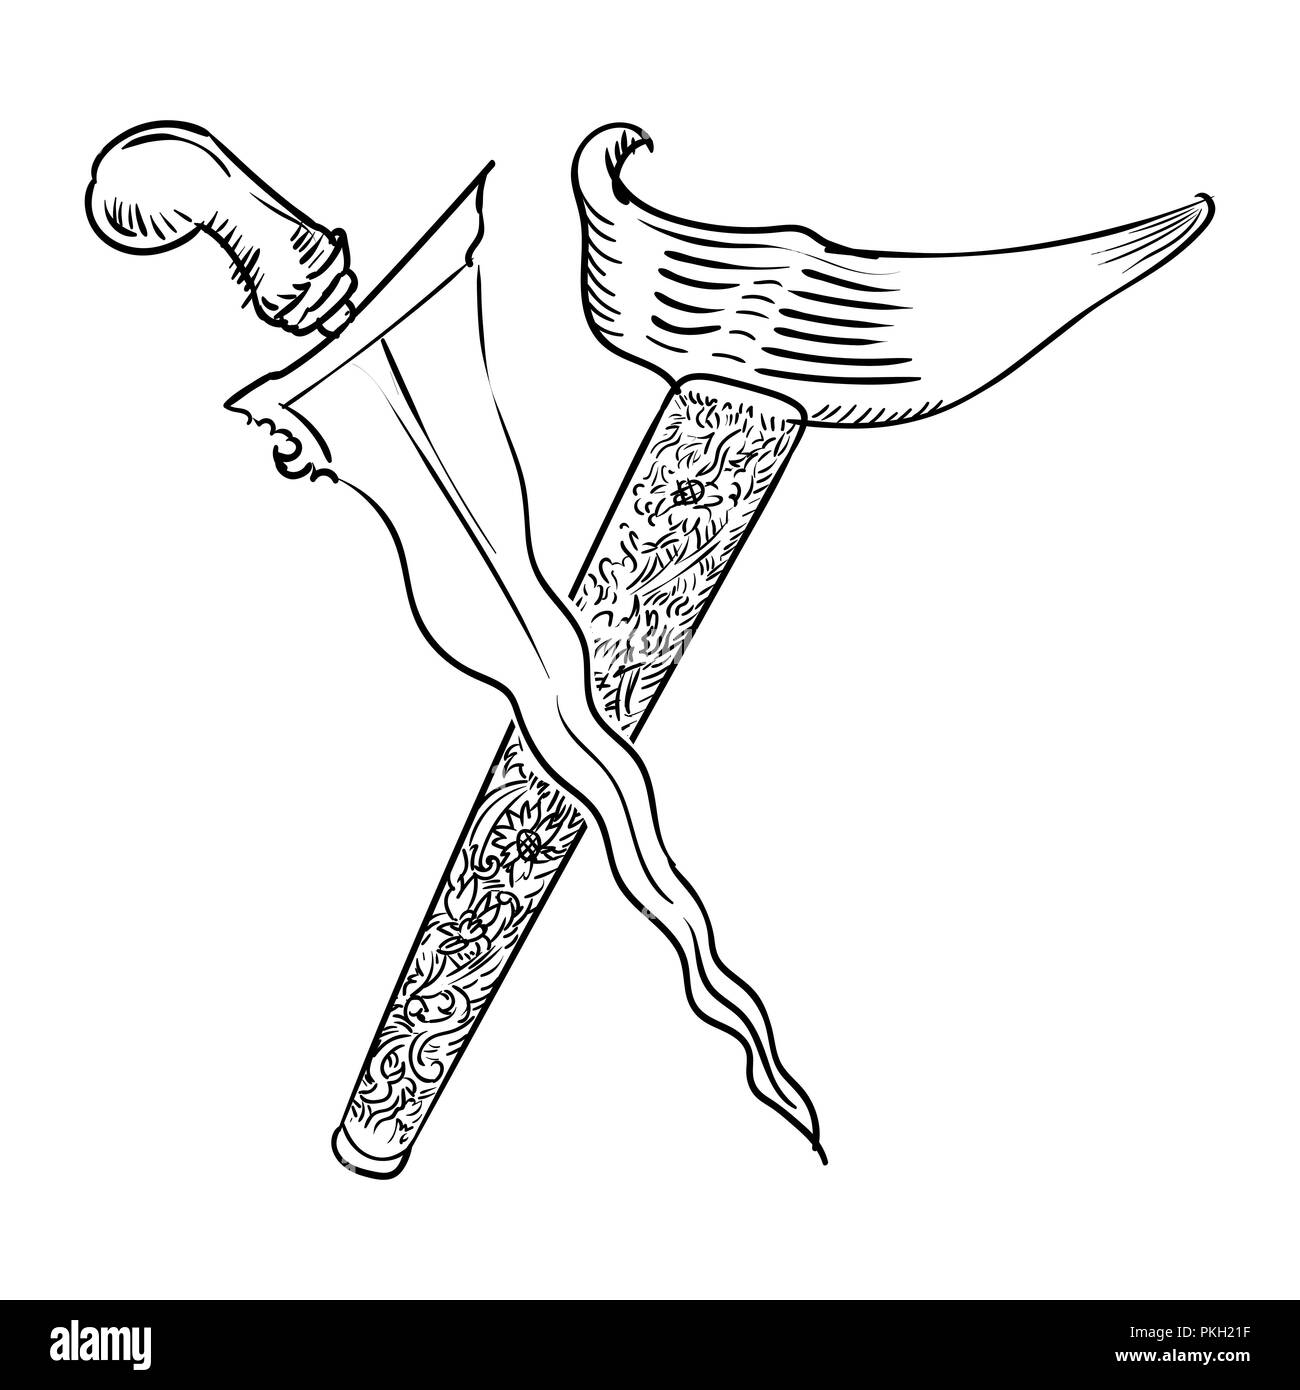 Il malese pugnale o Keris disegnati a mano per il libro da colorare, isolati su sfondo bianco - illustrazione vettoriale. Illustrazione Vettoriale